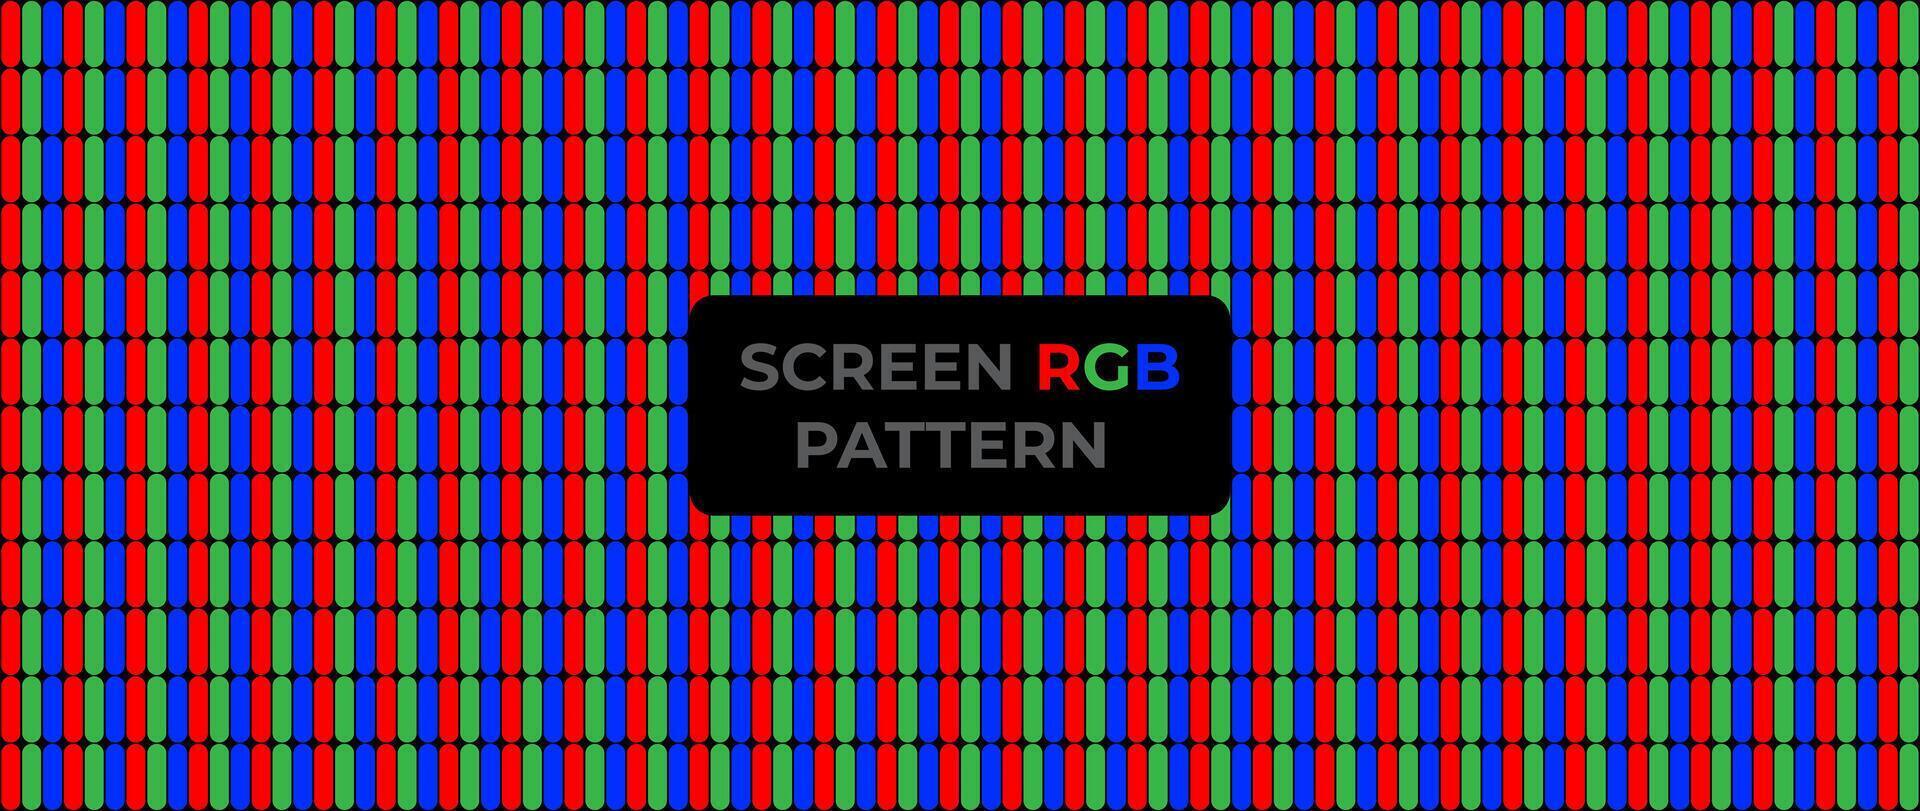 rouge, vert et bleu ou rgb LED filtrer, télévision écran contre-jour lumières sans couture modèle dans noir Contexte pour bannière, arrière-plan, conceptions, rétro vecteur